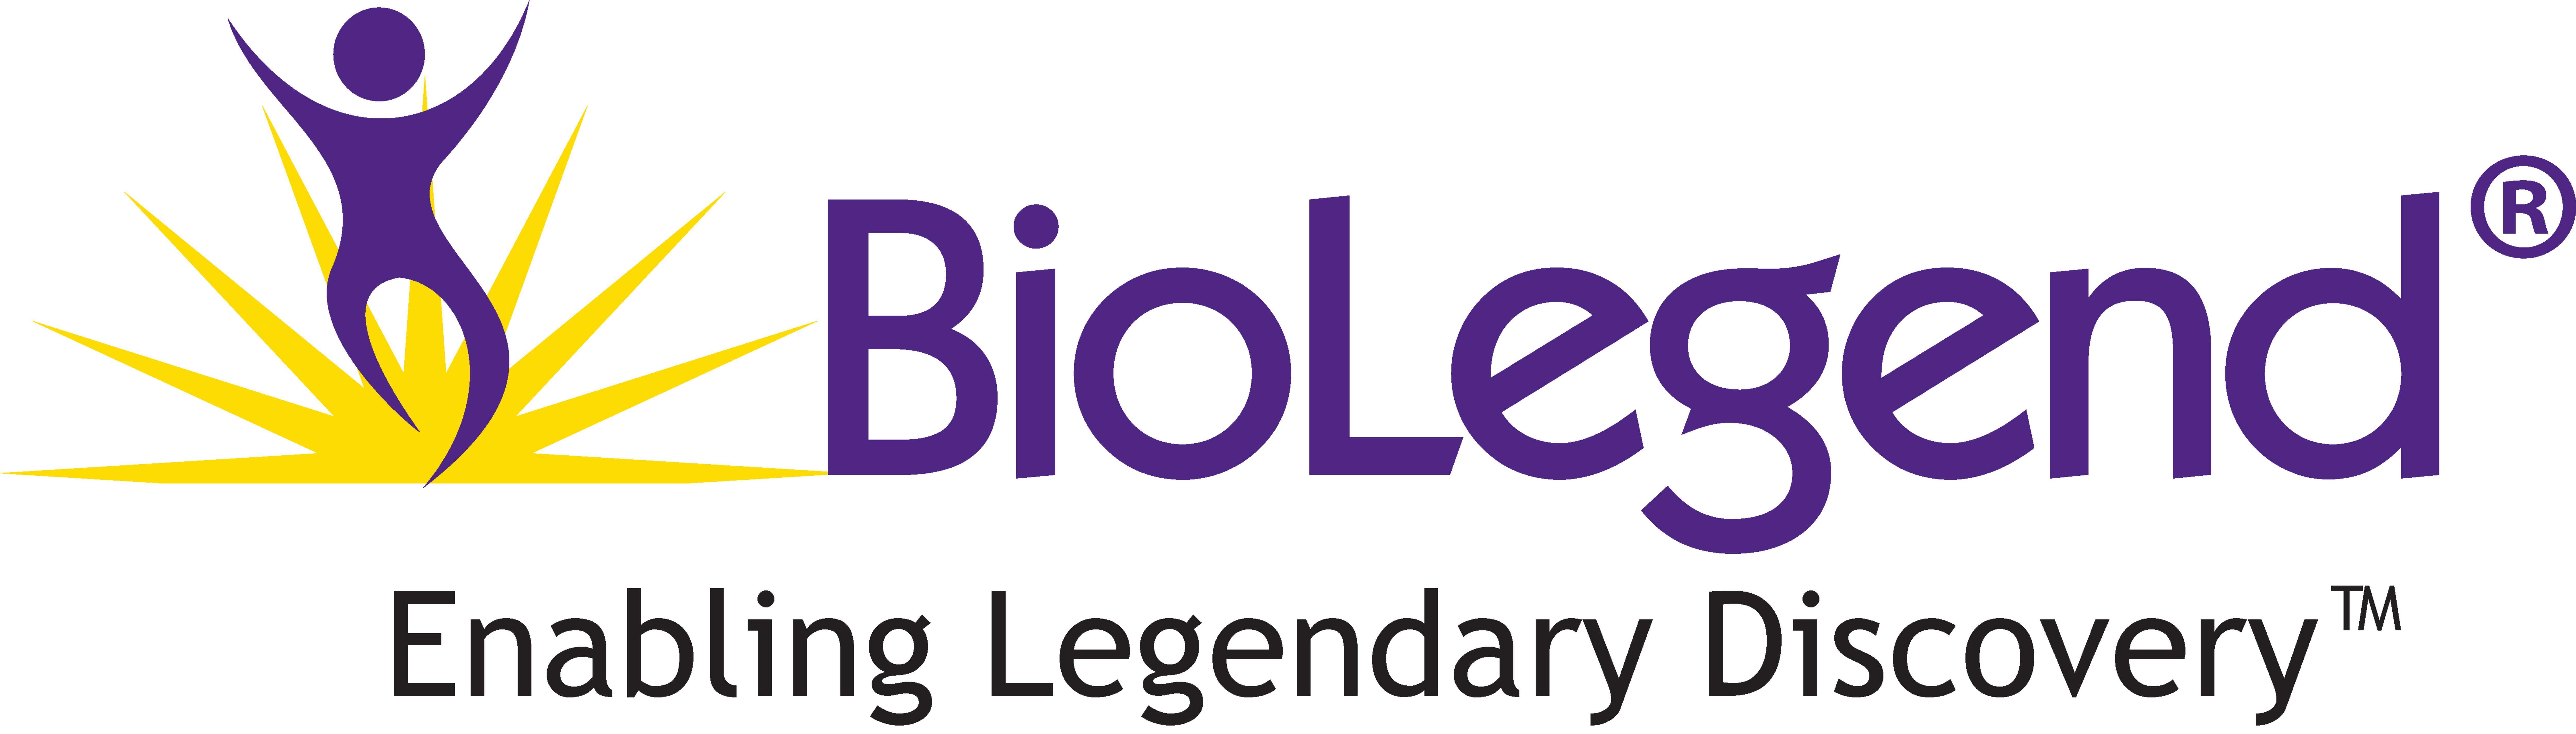 Silber BioLegend logo 2 kl